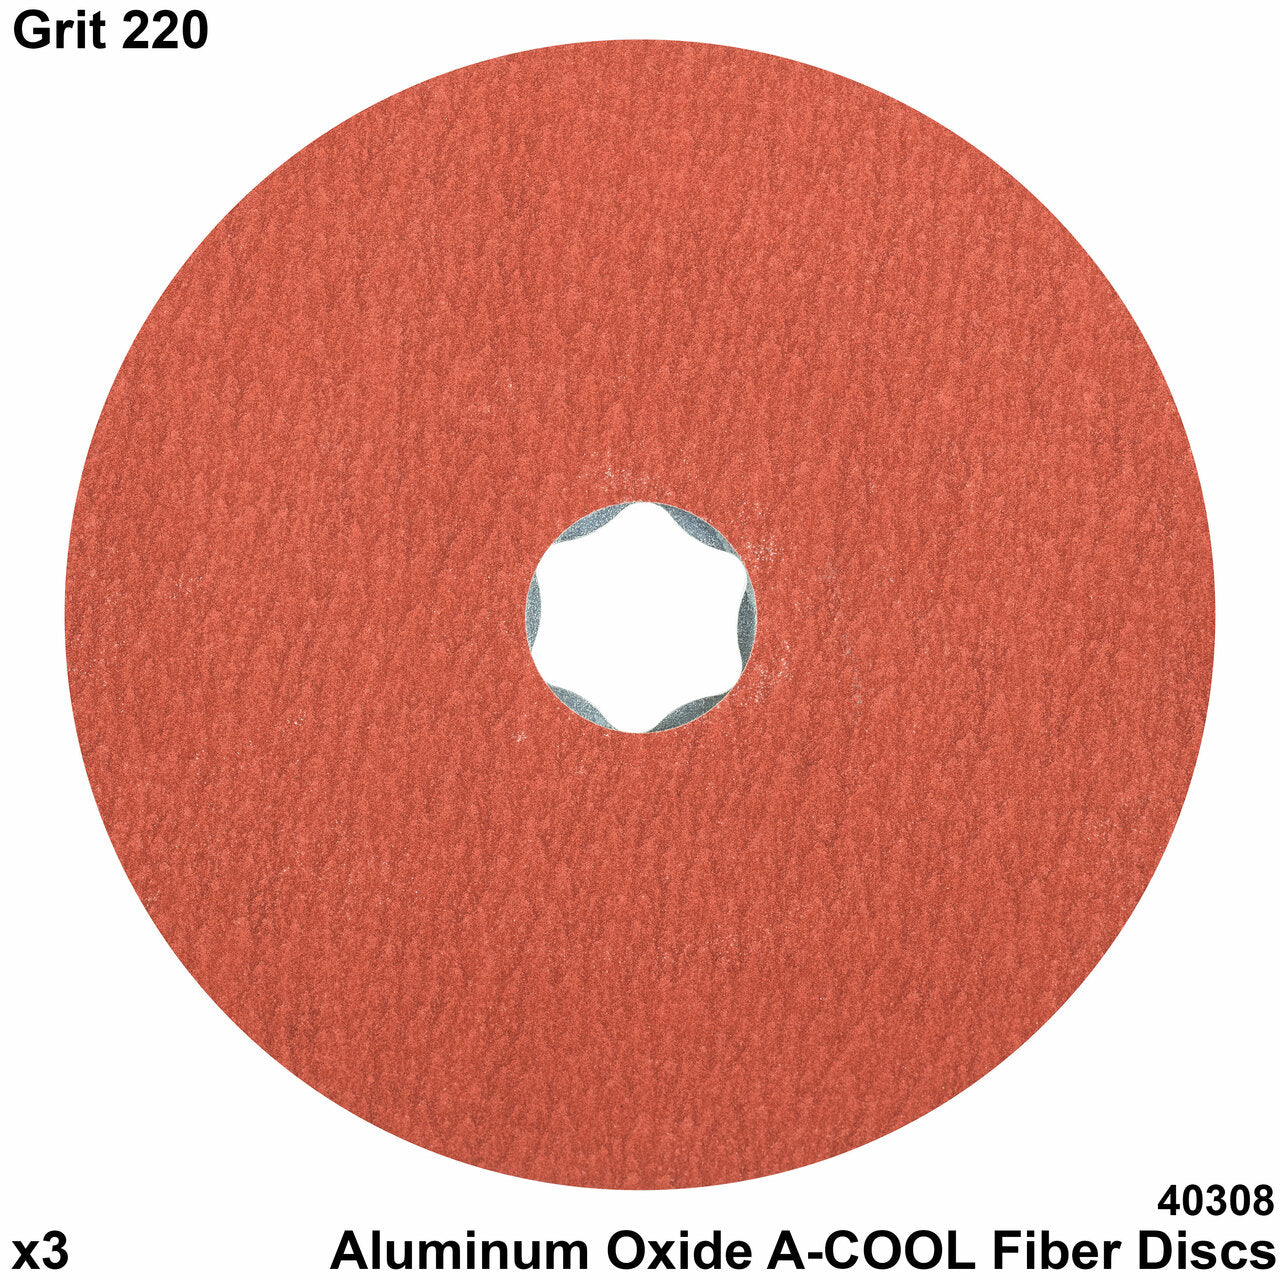 COMBICLICK® Fiber Disc, 4-1/2" Dia. - Aluminum Oxide A-COOL, 220 Grit (25pc)